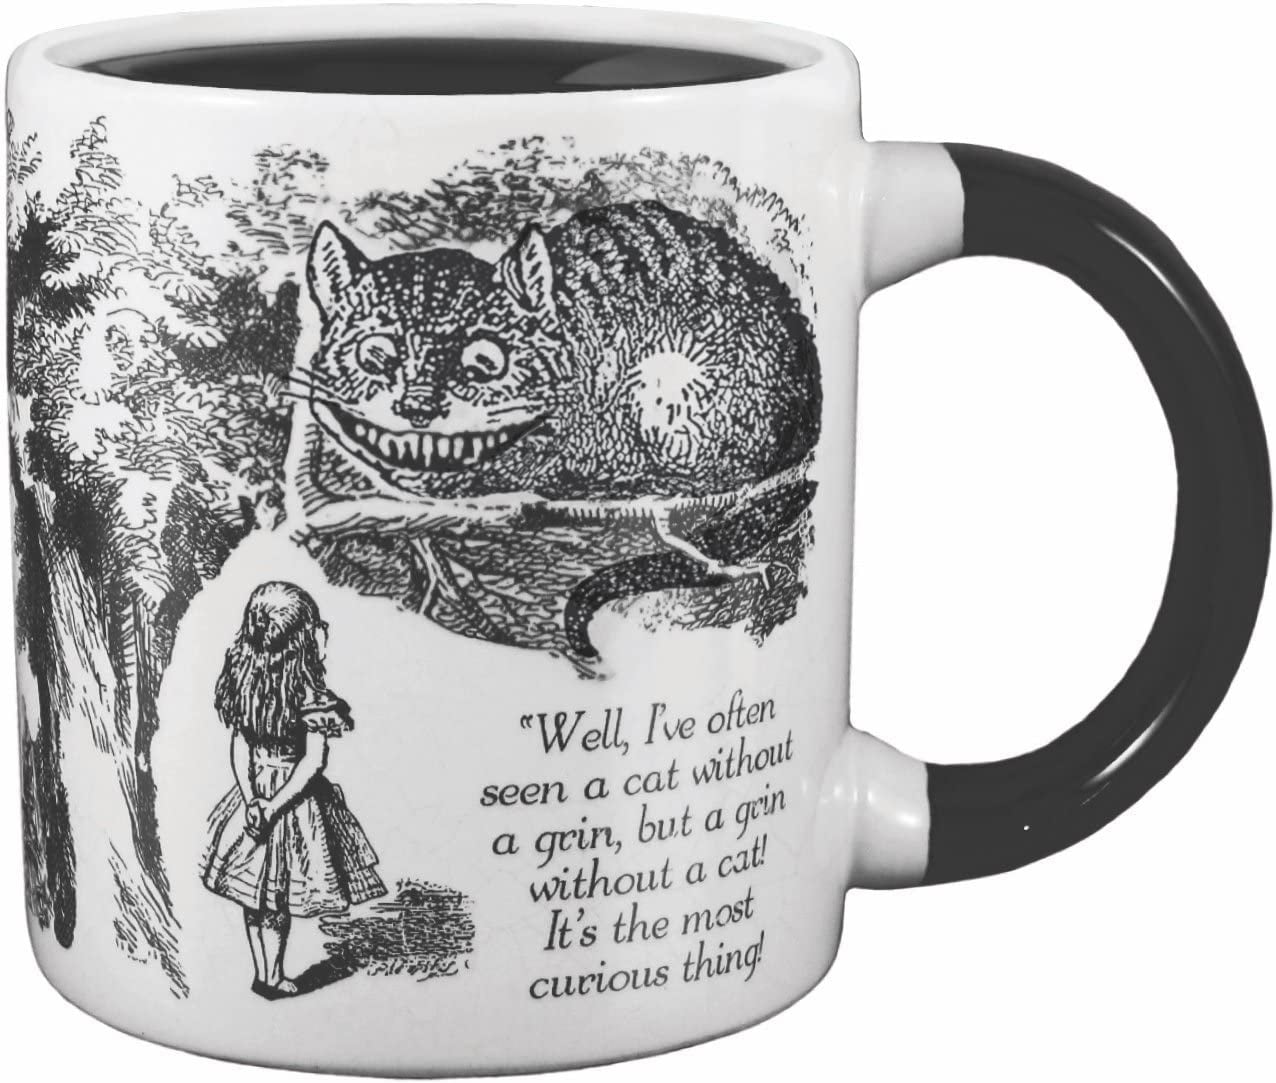 Gift for Her Mug 11oz Whimsical gift Gift for Him Winter Mug Alice In Wonderland Mug New Year gift